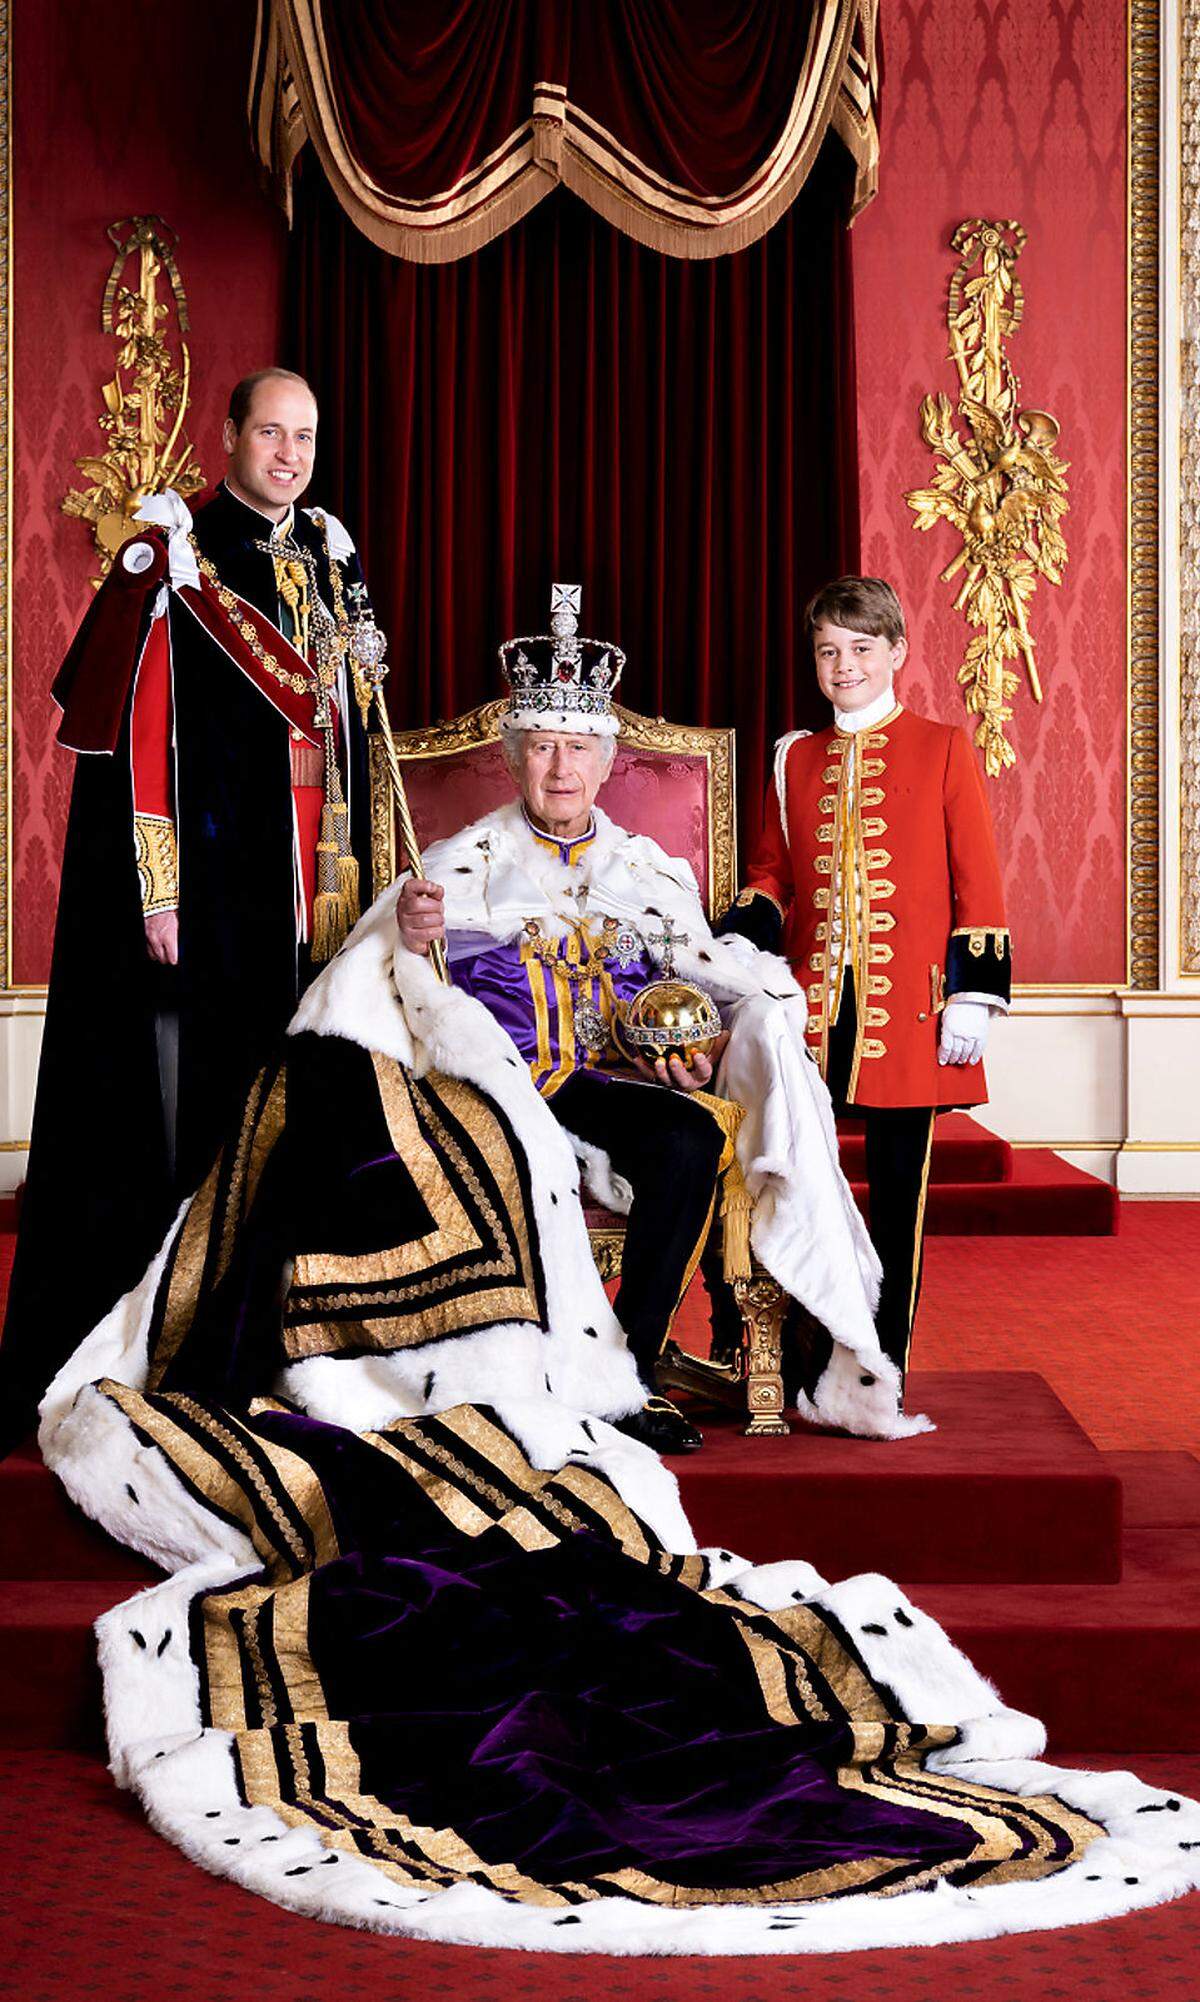 15. Mai. Eine Woche nach der feierlichen Krönung von König Charles III. und seiner Frau Königin Camilla hat der Buckingham-Palast weitere Bilder von dem großen Tag veröffentlicht. Auf einem von zwei Bildern ist der König mit seinen beiden nächsten Thronerben zu sehen, Prinz William und Prinz George. Charles sitzt dabei im vollen Ornat mit Krone, Reichsapfel und Zepter auf seinem Thron im Londoner Buckingham-Palast. Mehr dazu.